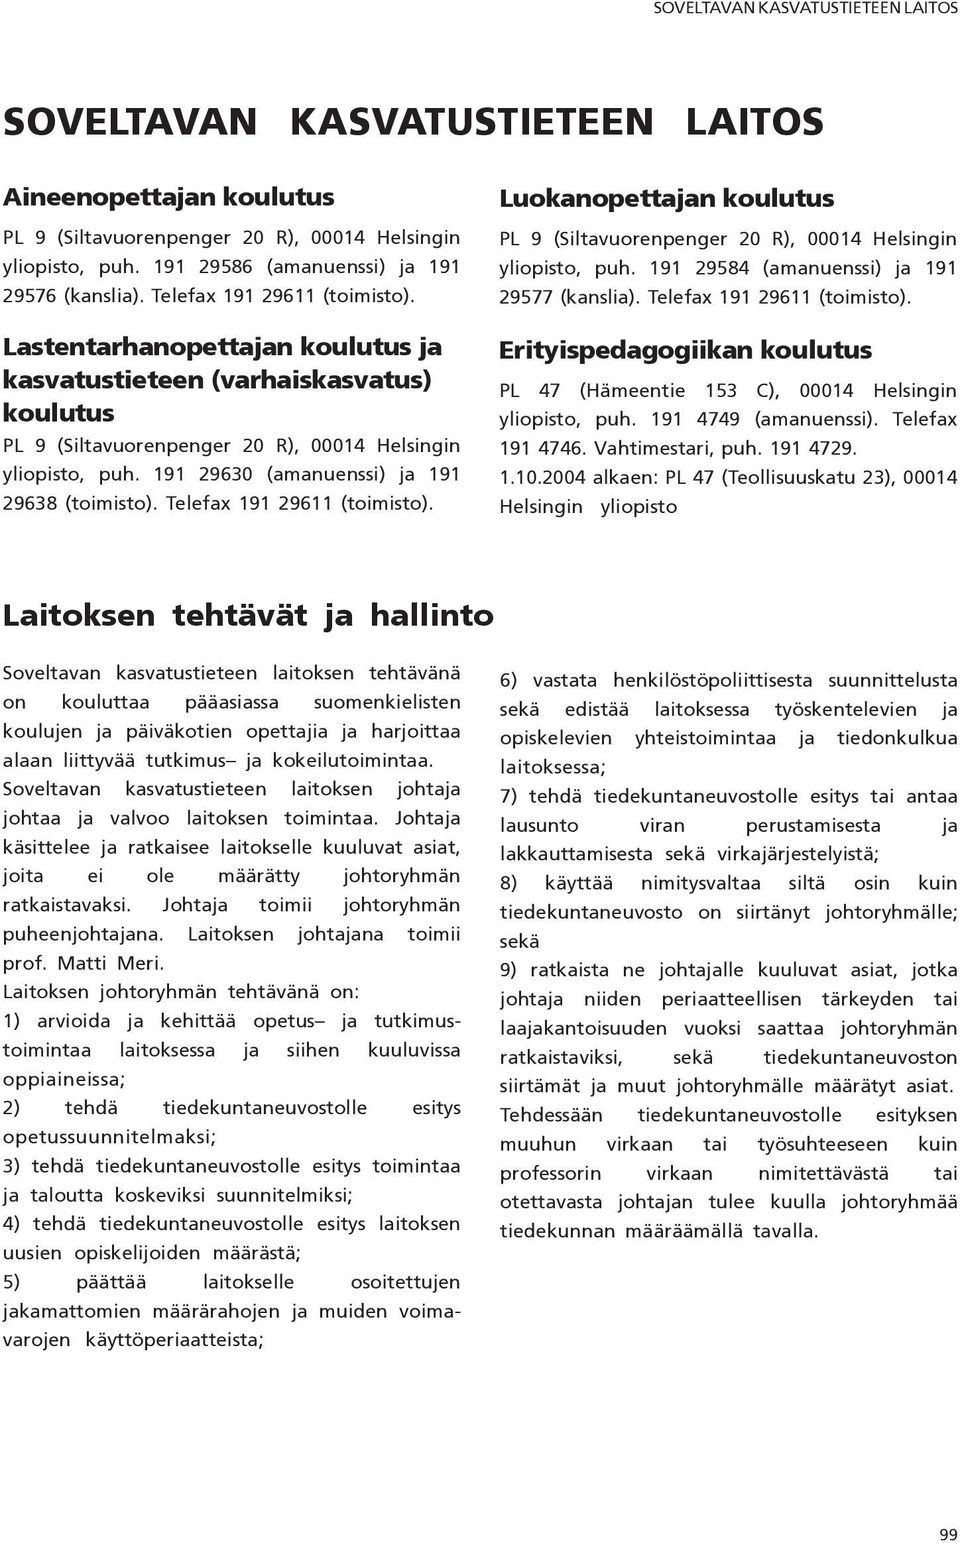 Lastentarhanopettajan koulutus ja kasvatustieteen (varhaiskasvatus) koulutus PL 9 (Siltavuorenpenger 20 R), 00014 Helsingin yliopisto, puh. 191 29630 (amanuenssi) ja 191 29638 (toimisto).